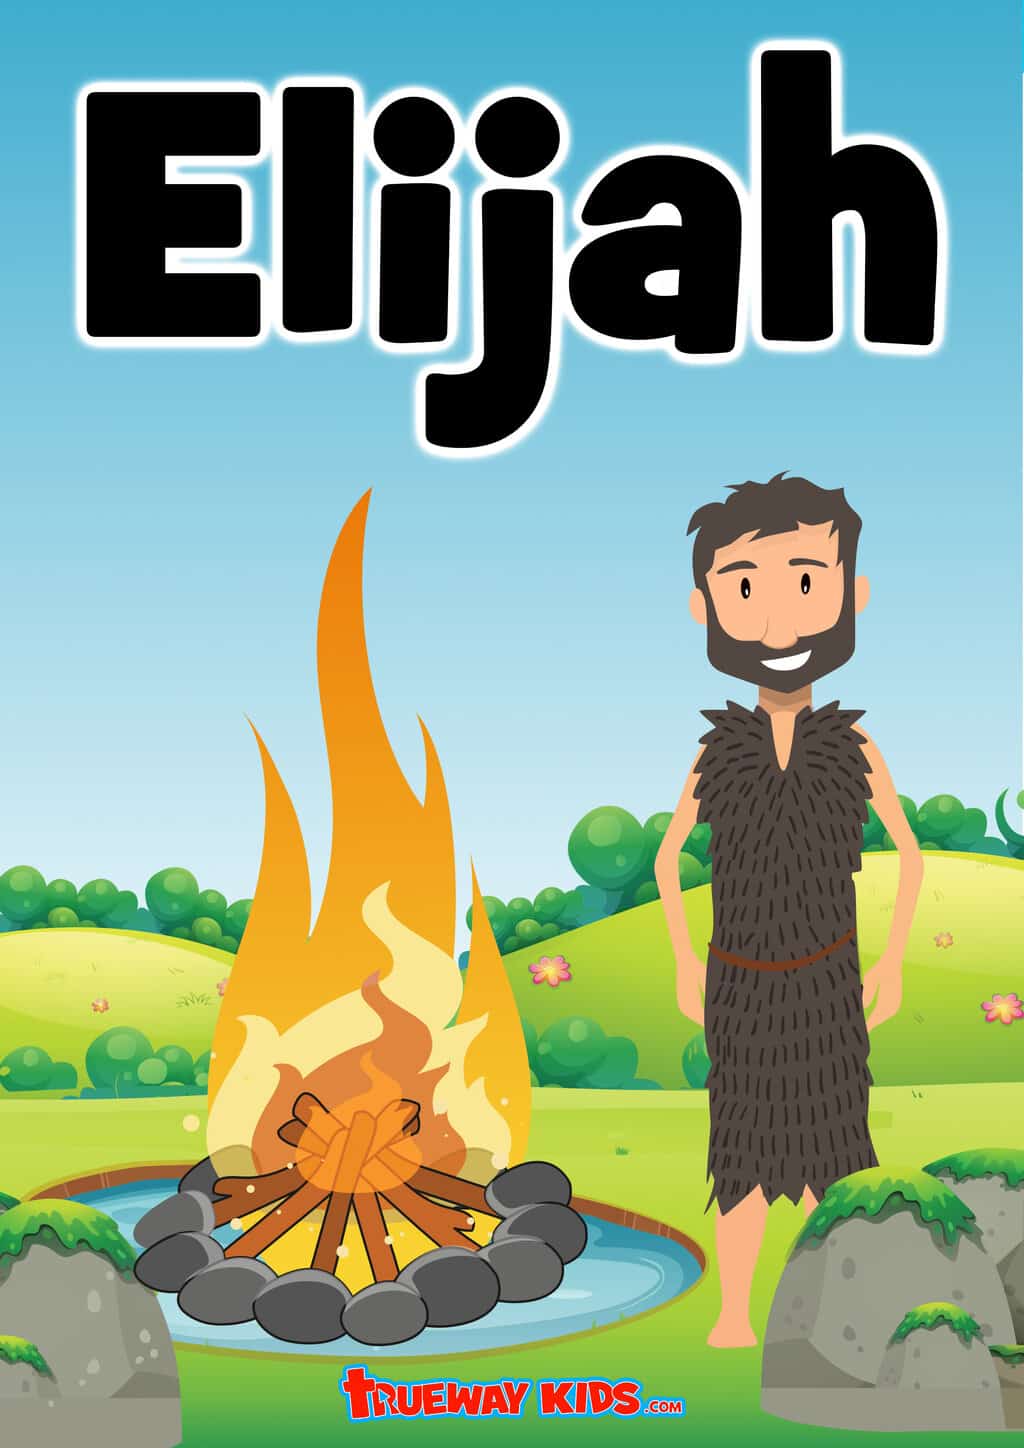 elijah bible study book faith and fire